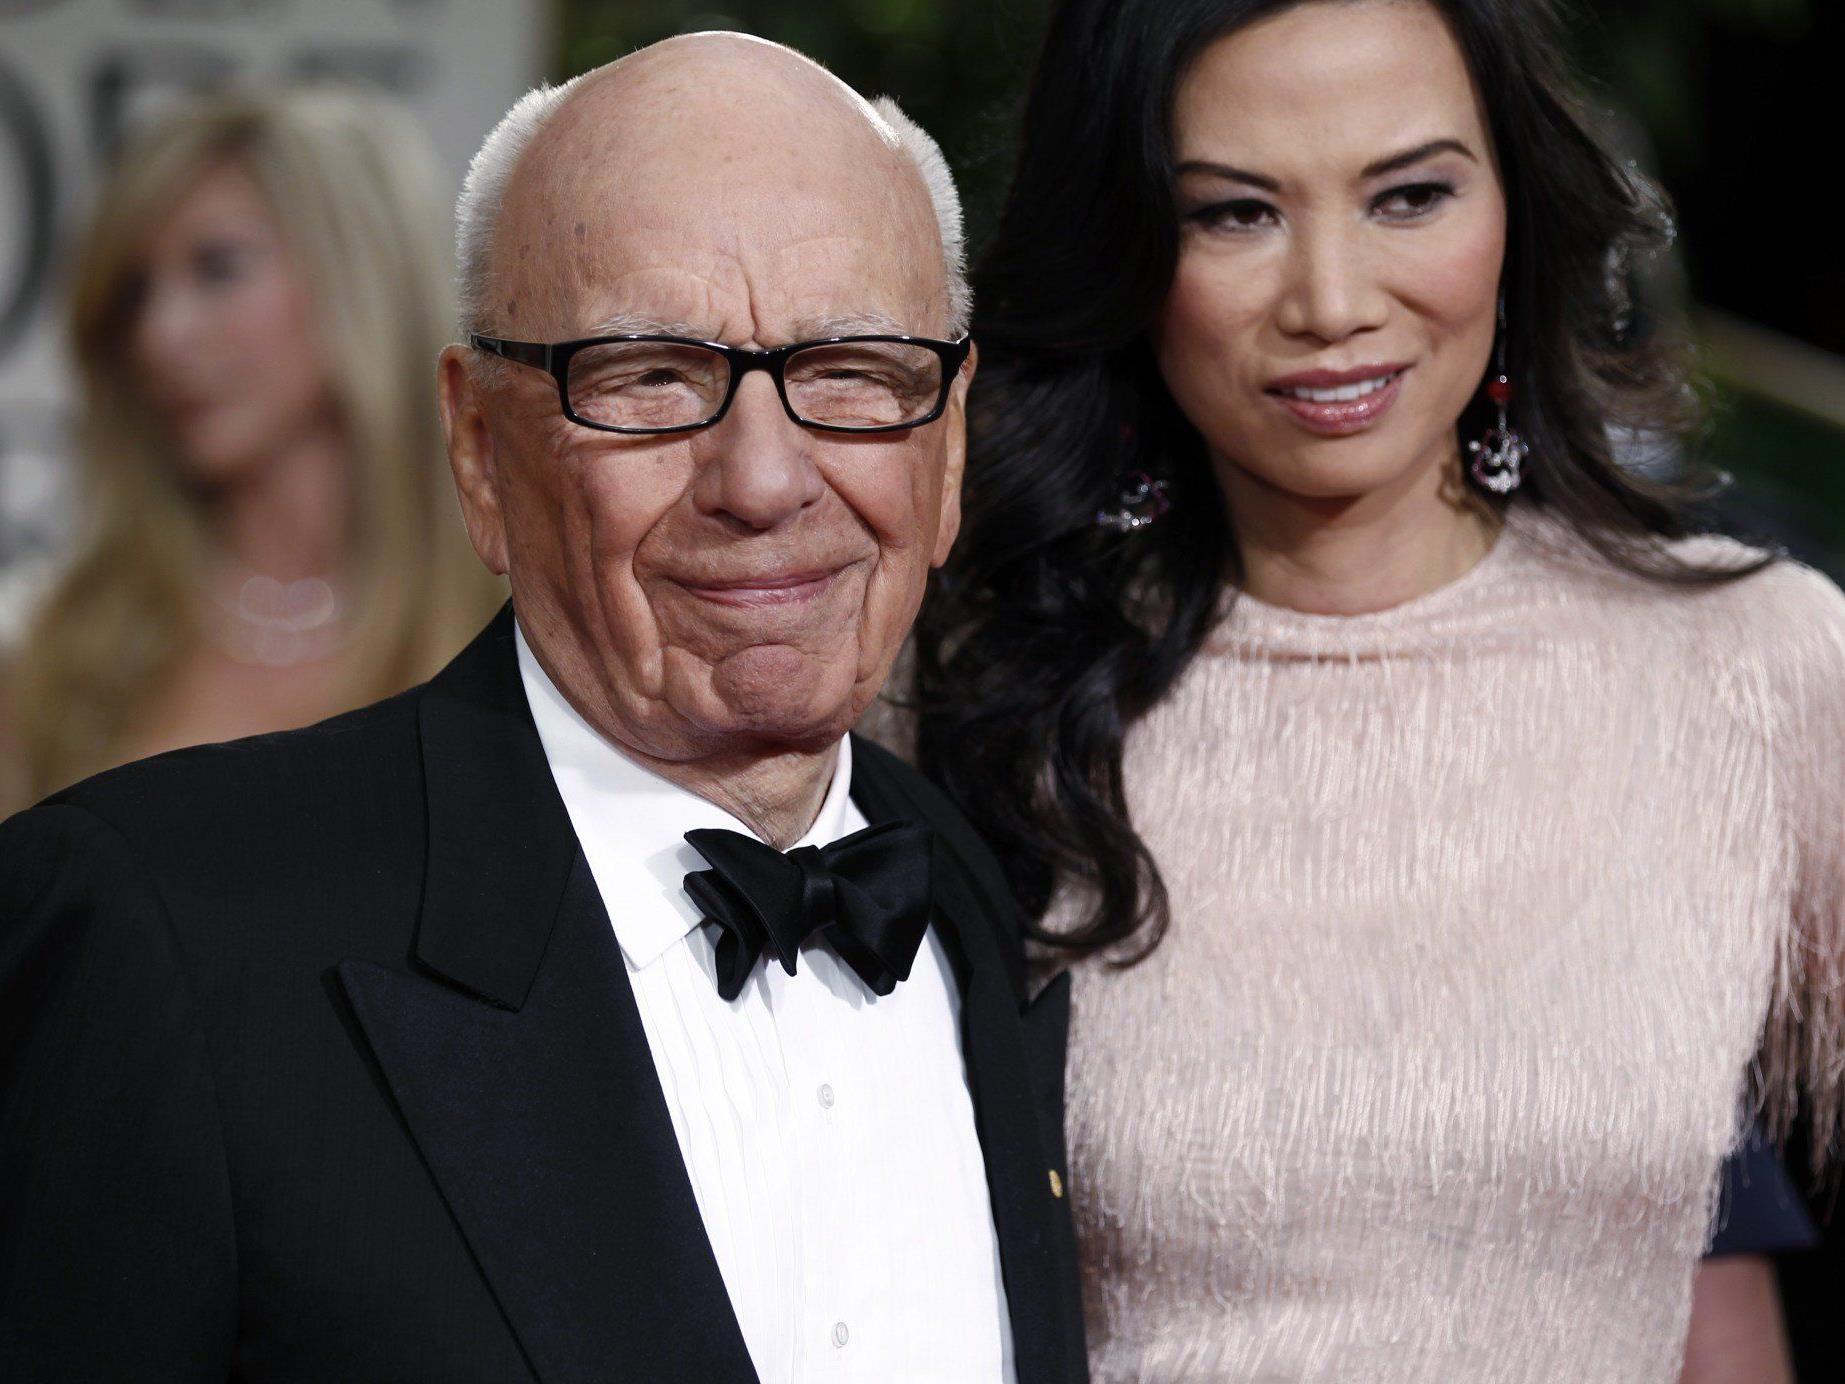 Bei Murdoch und Deng beträgt der Altersunterschied 38 Jahre.